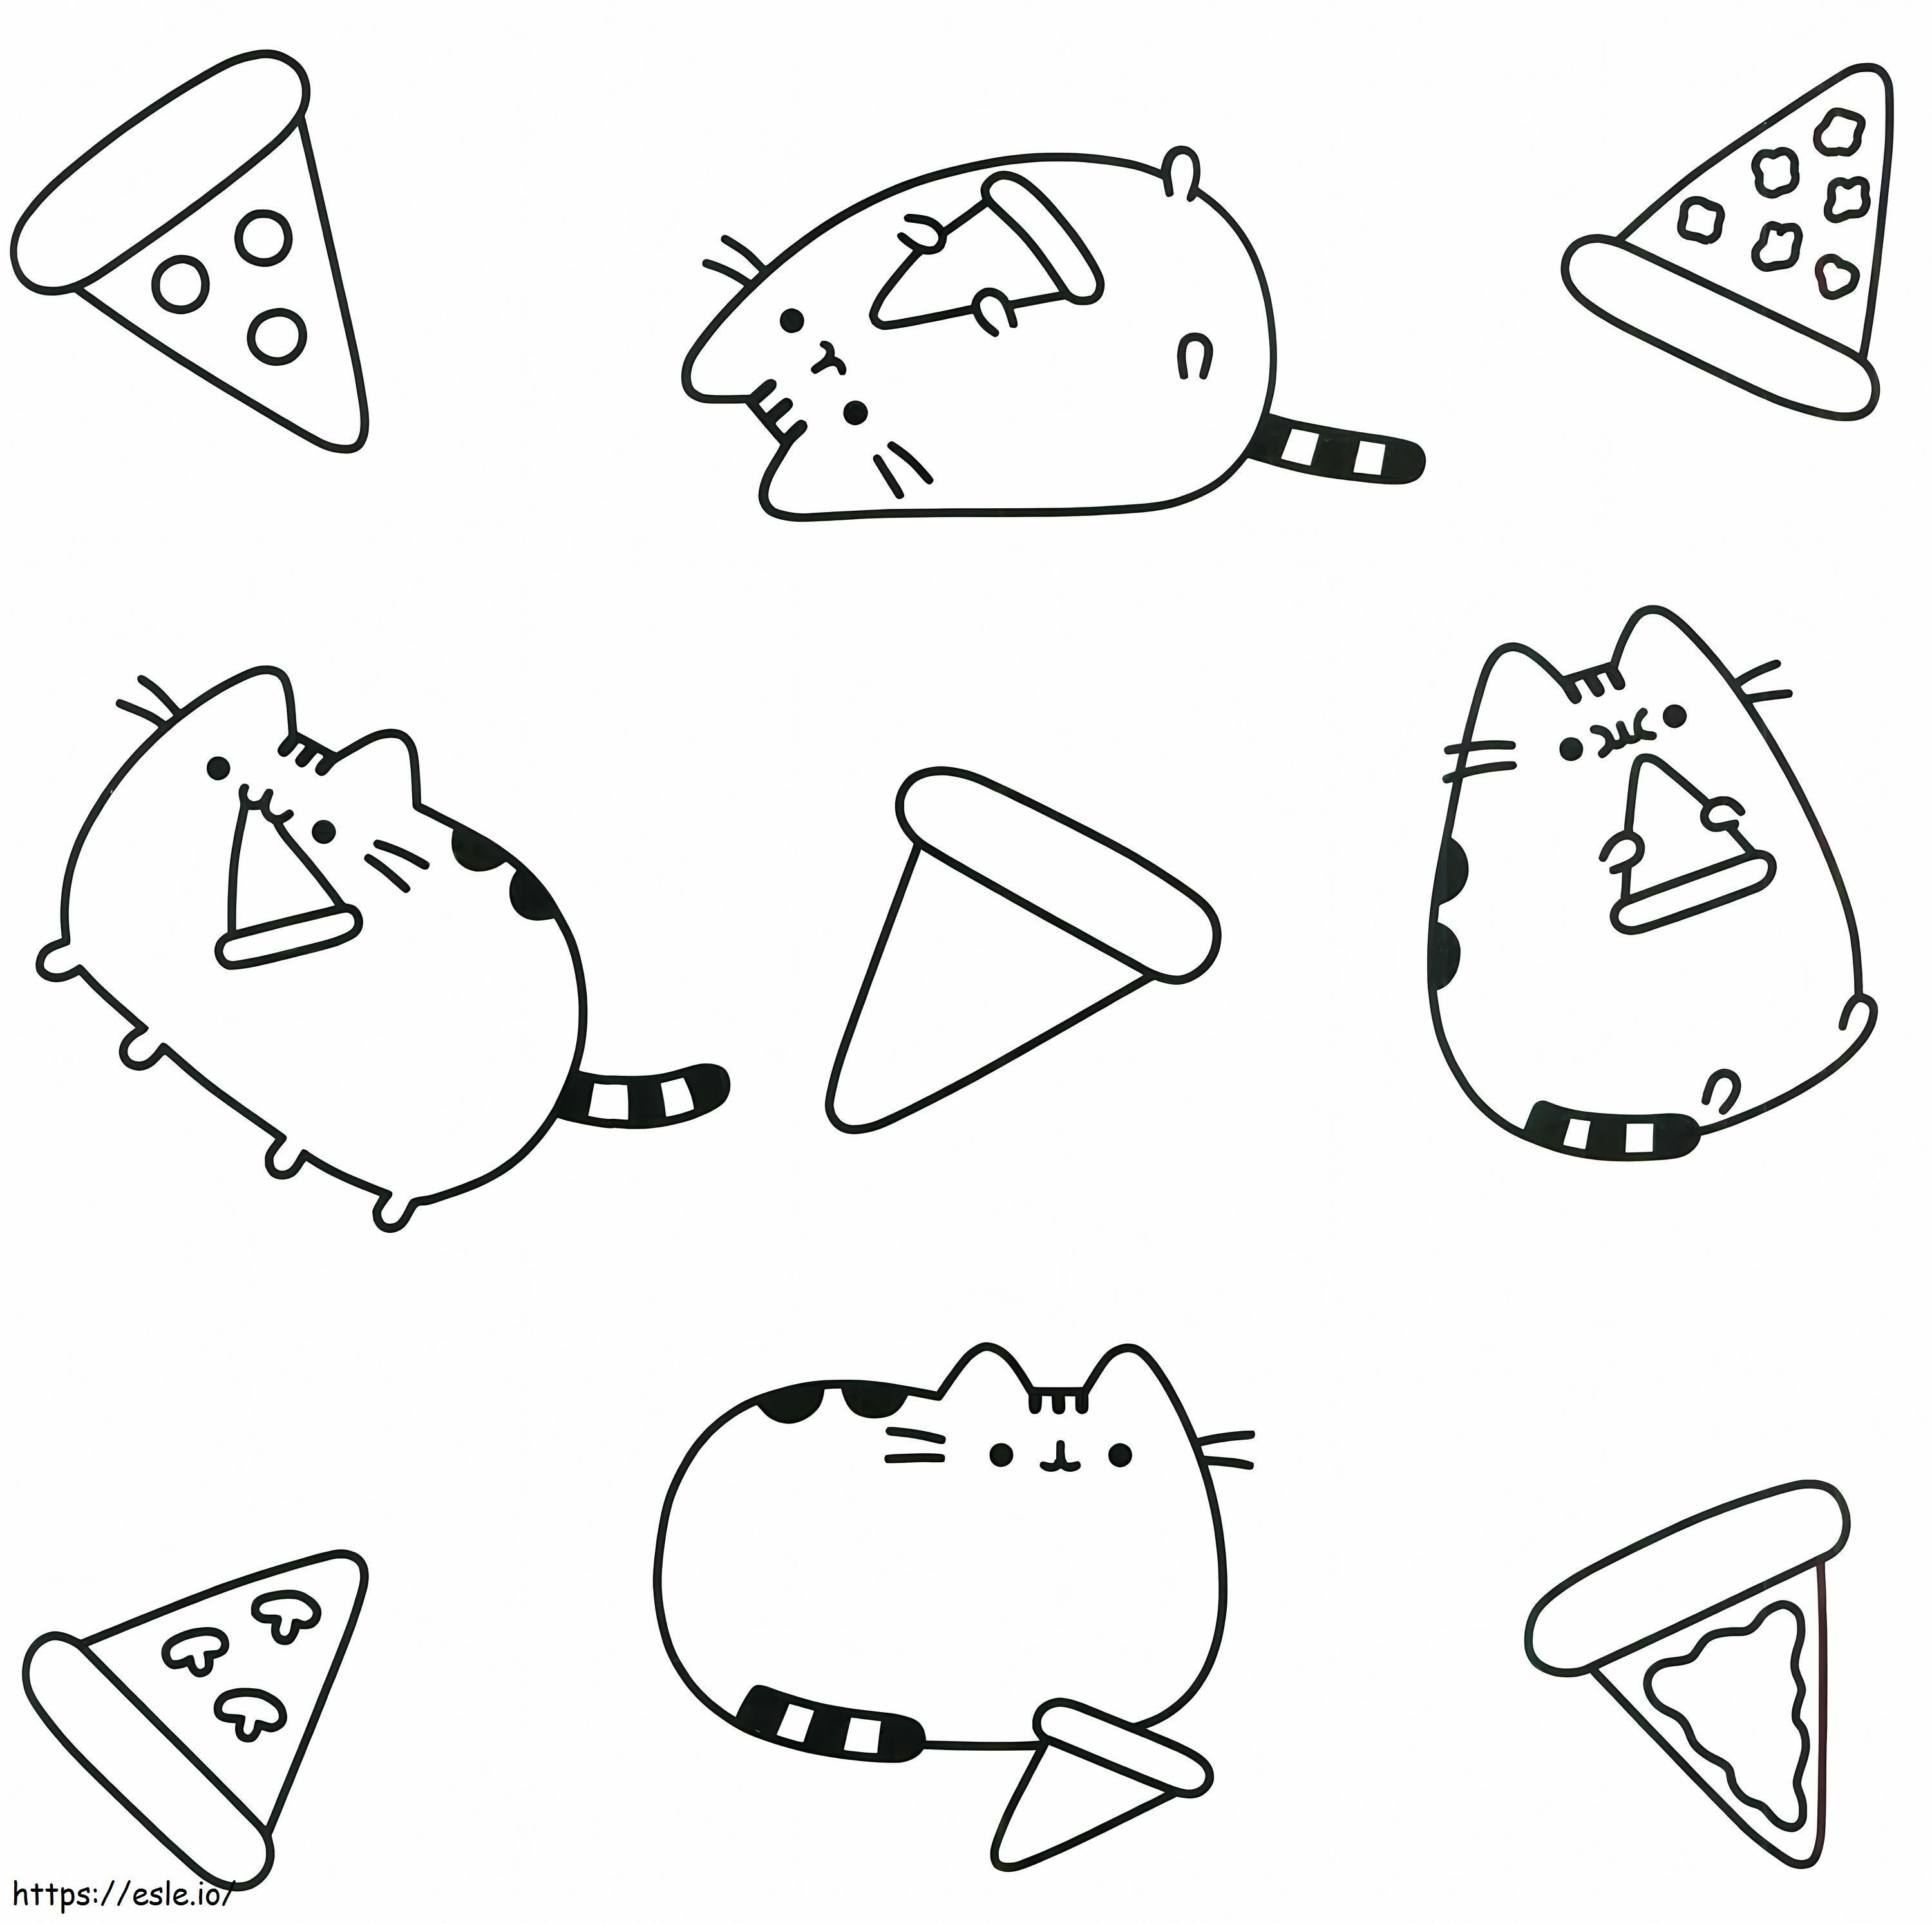 Katze und Pizza ausmalbilder